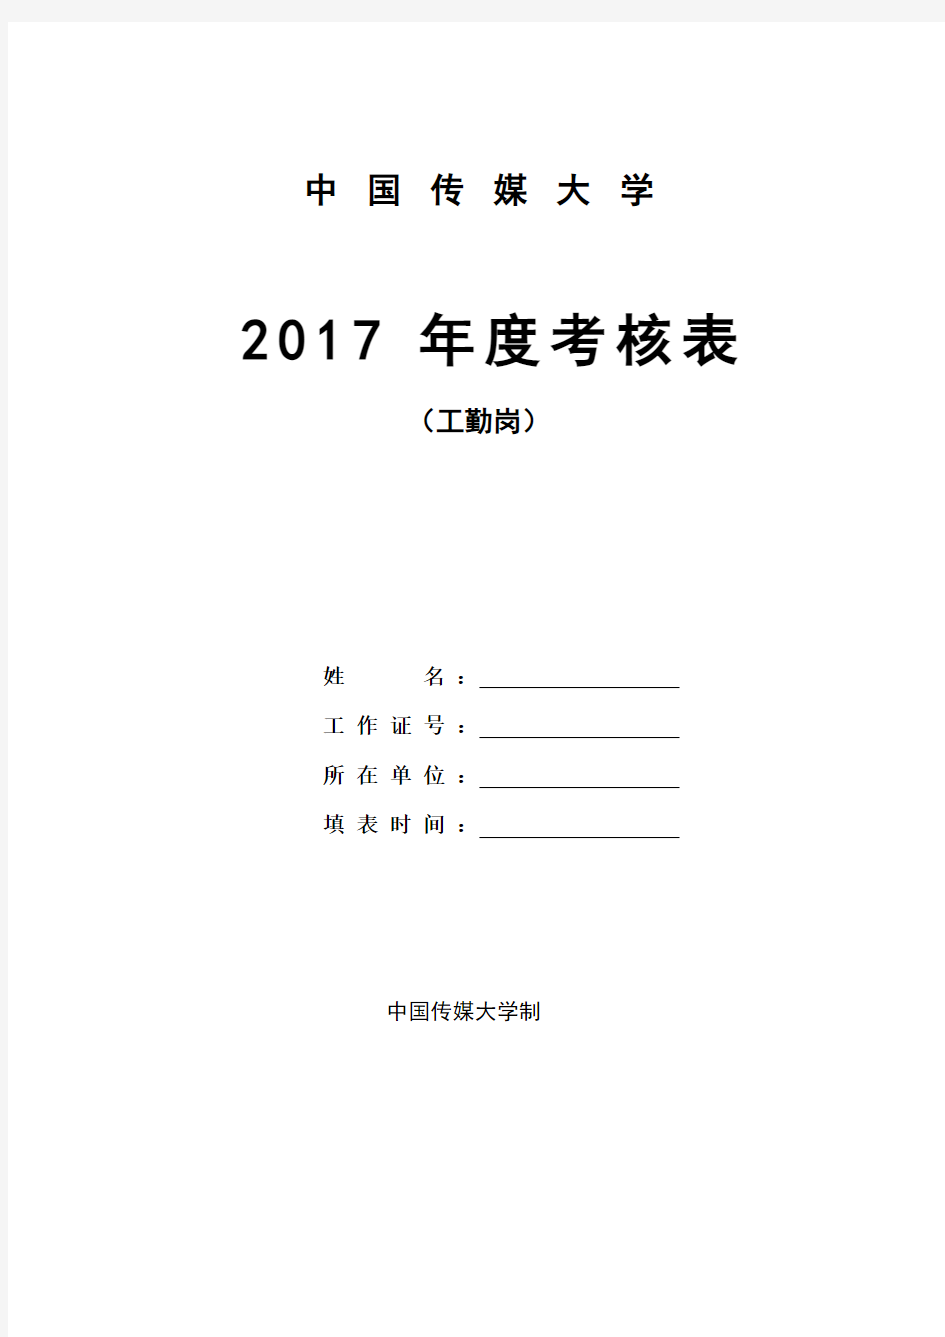 2017年度考核表(工勤岗)